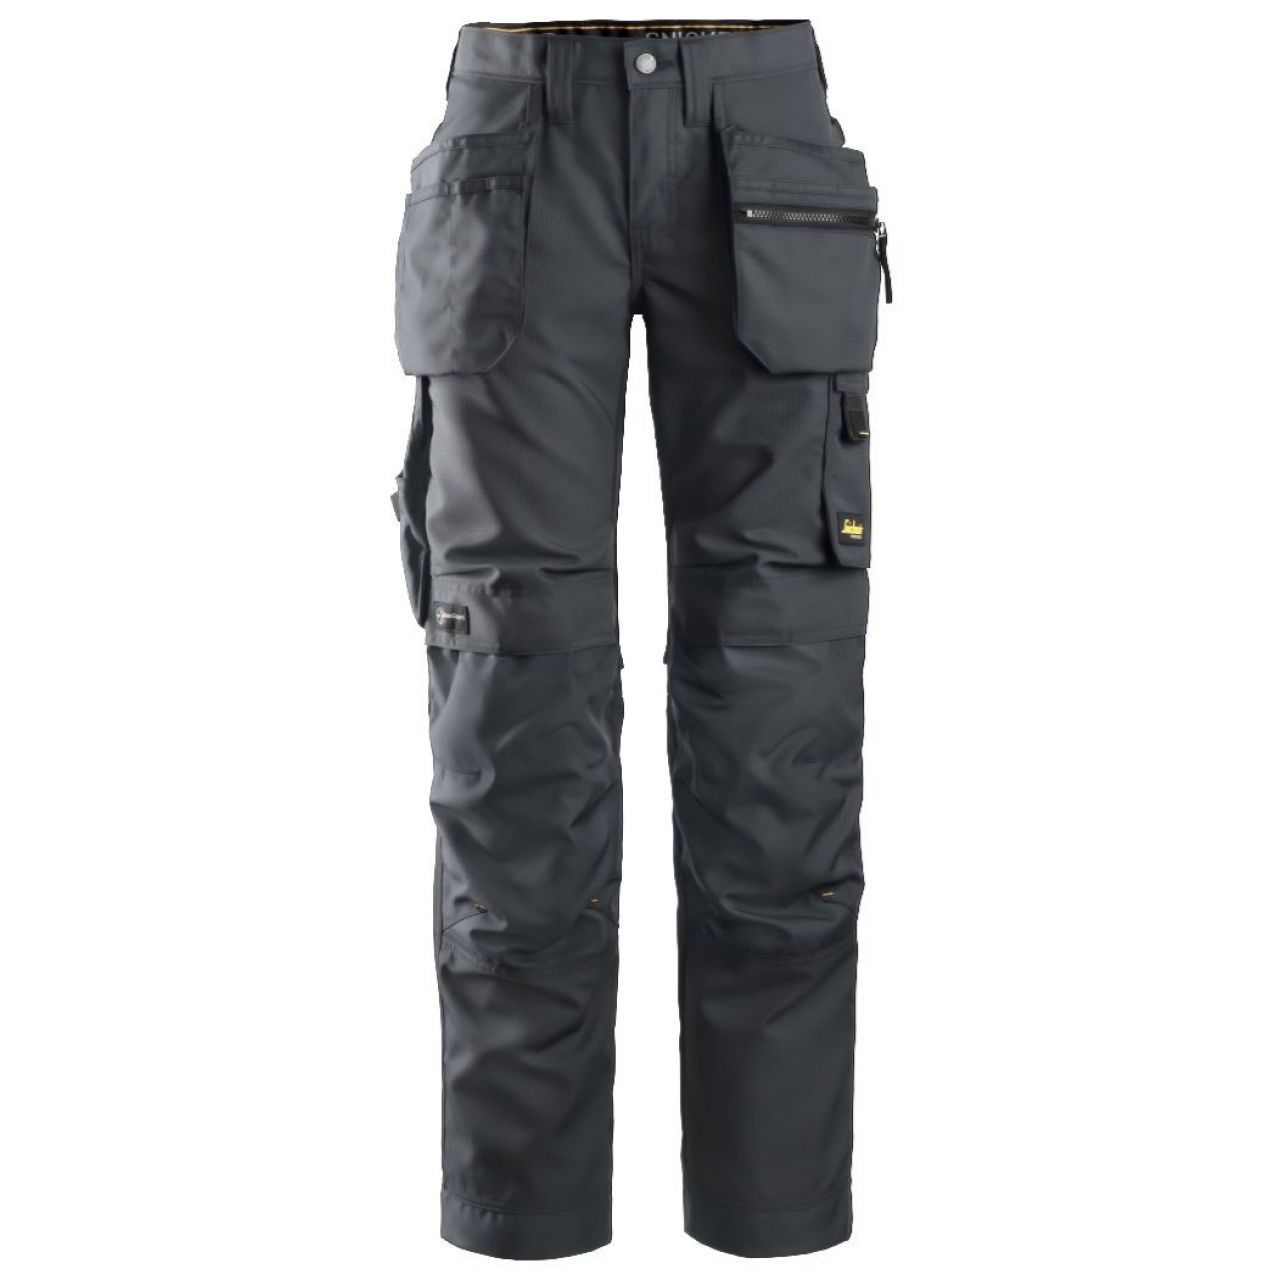 Pantalon de mujer AllroundWork+ con bolsillos flotantes gris acero-negro talla 019